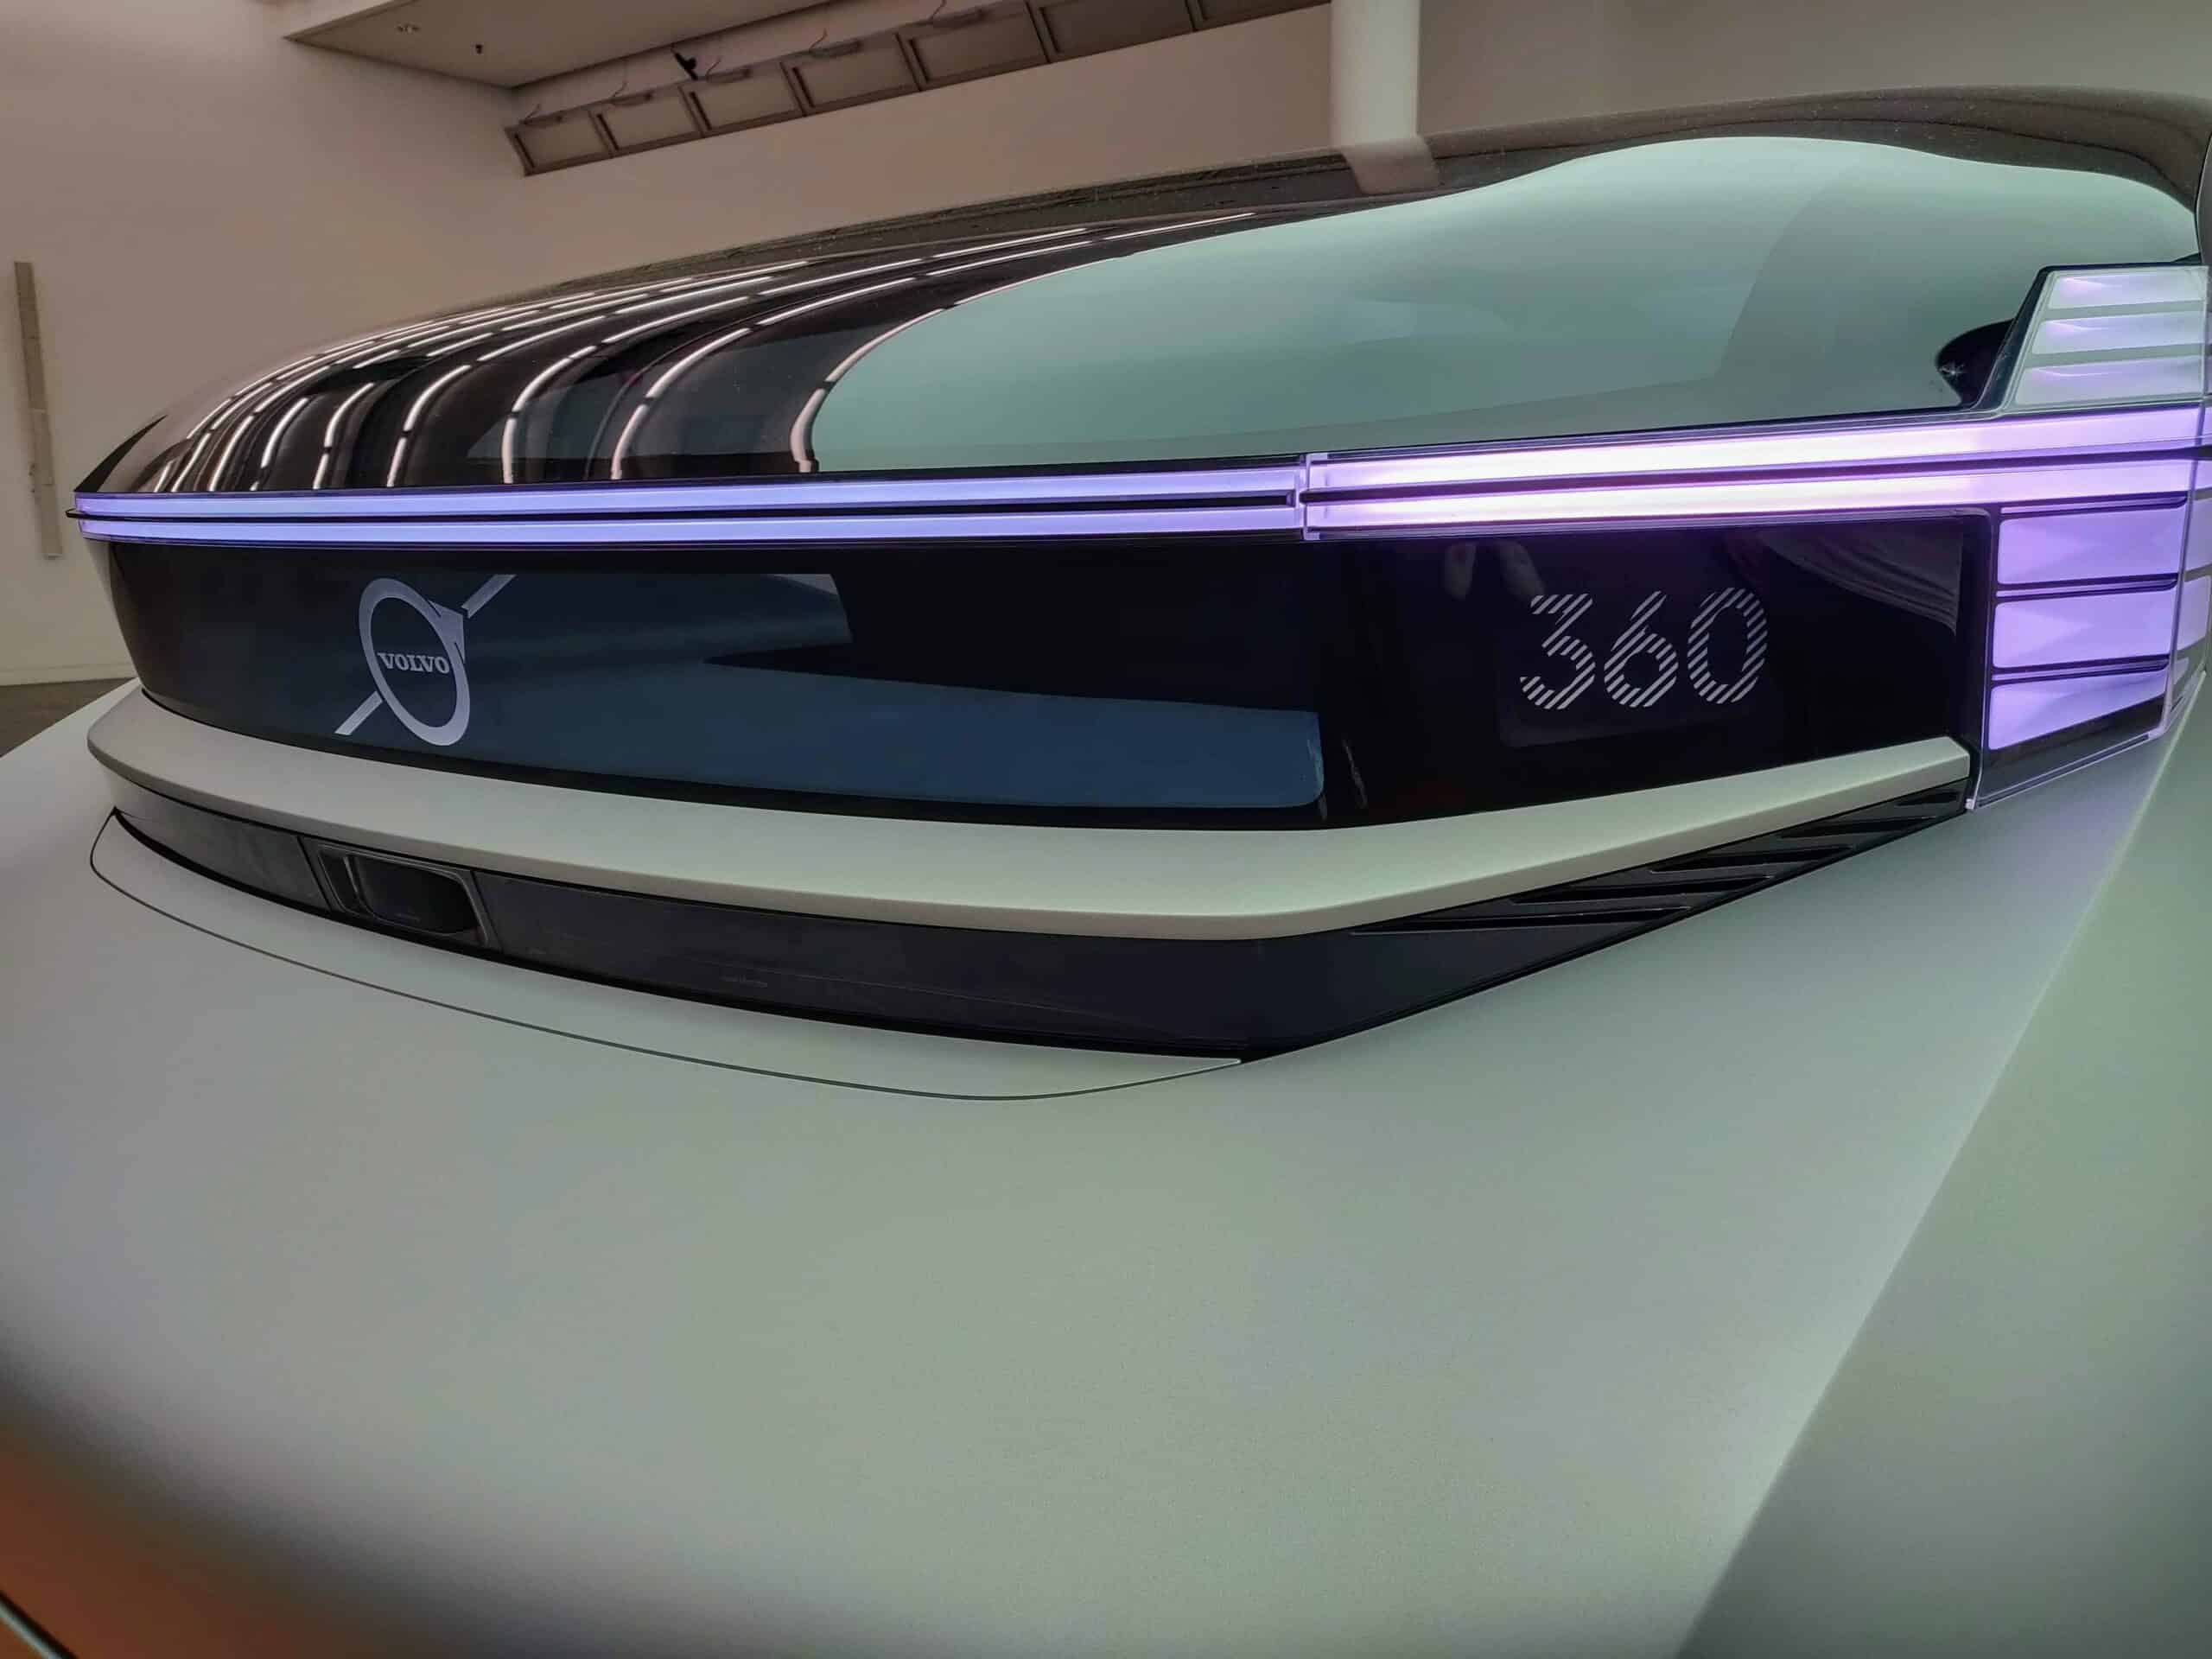 De auto van de toekomst volgens Volvo